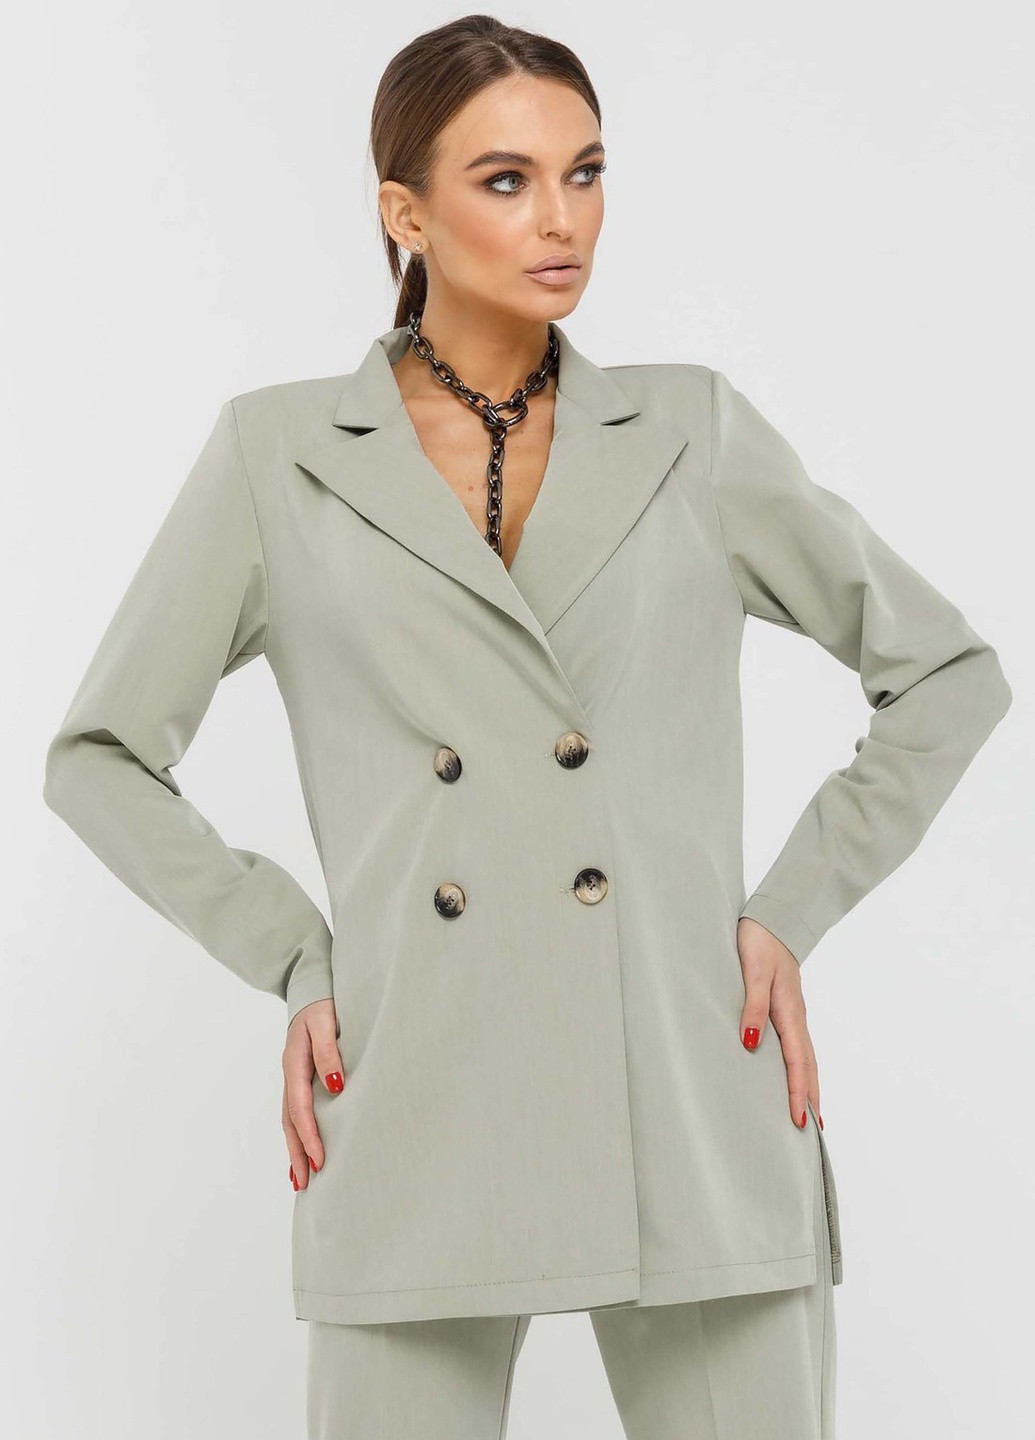 Оливковый женский пиджак Ри Мари однотонный - демисезонный